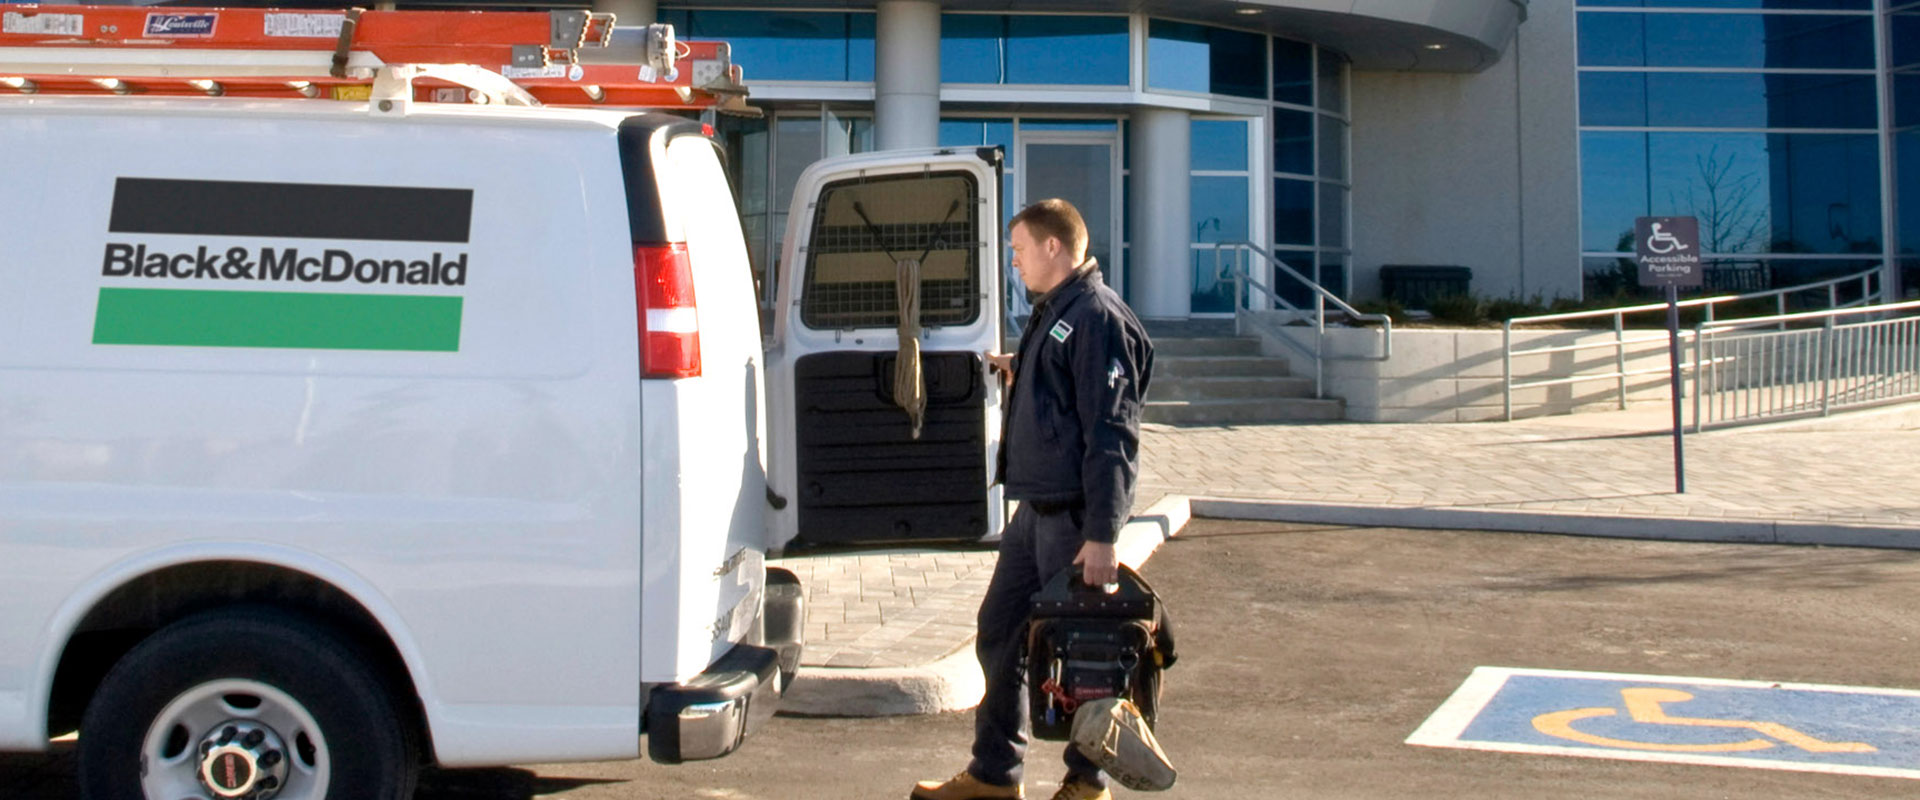 Un technicien des services de B&M charge l’équipement dans la fourgonnette de service